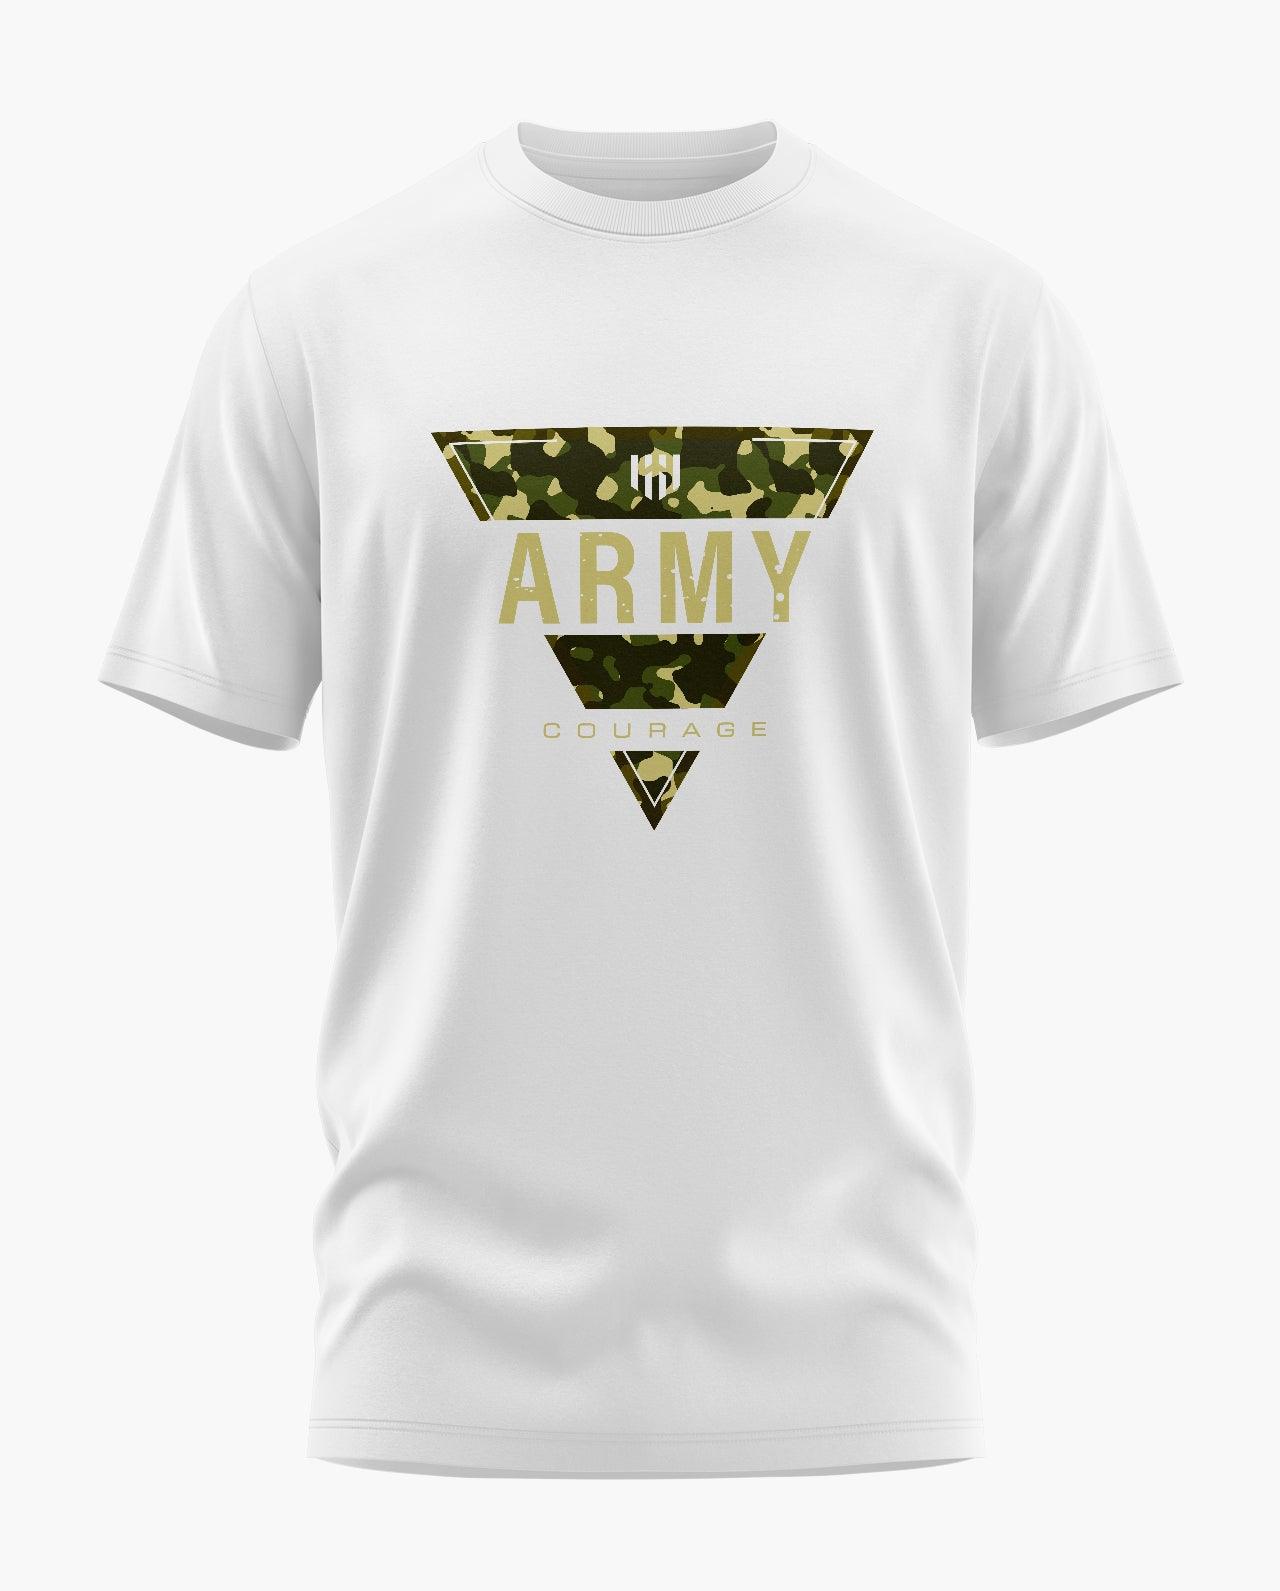 Army Courage T-Shirt - Aero Armour